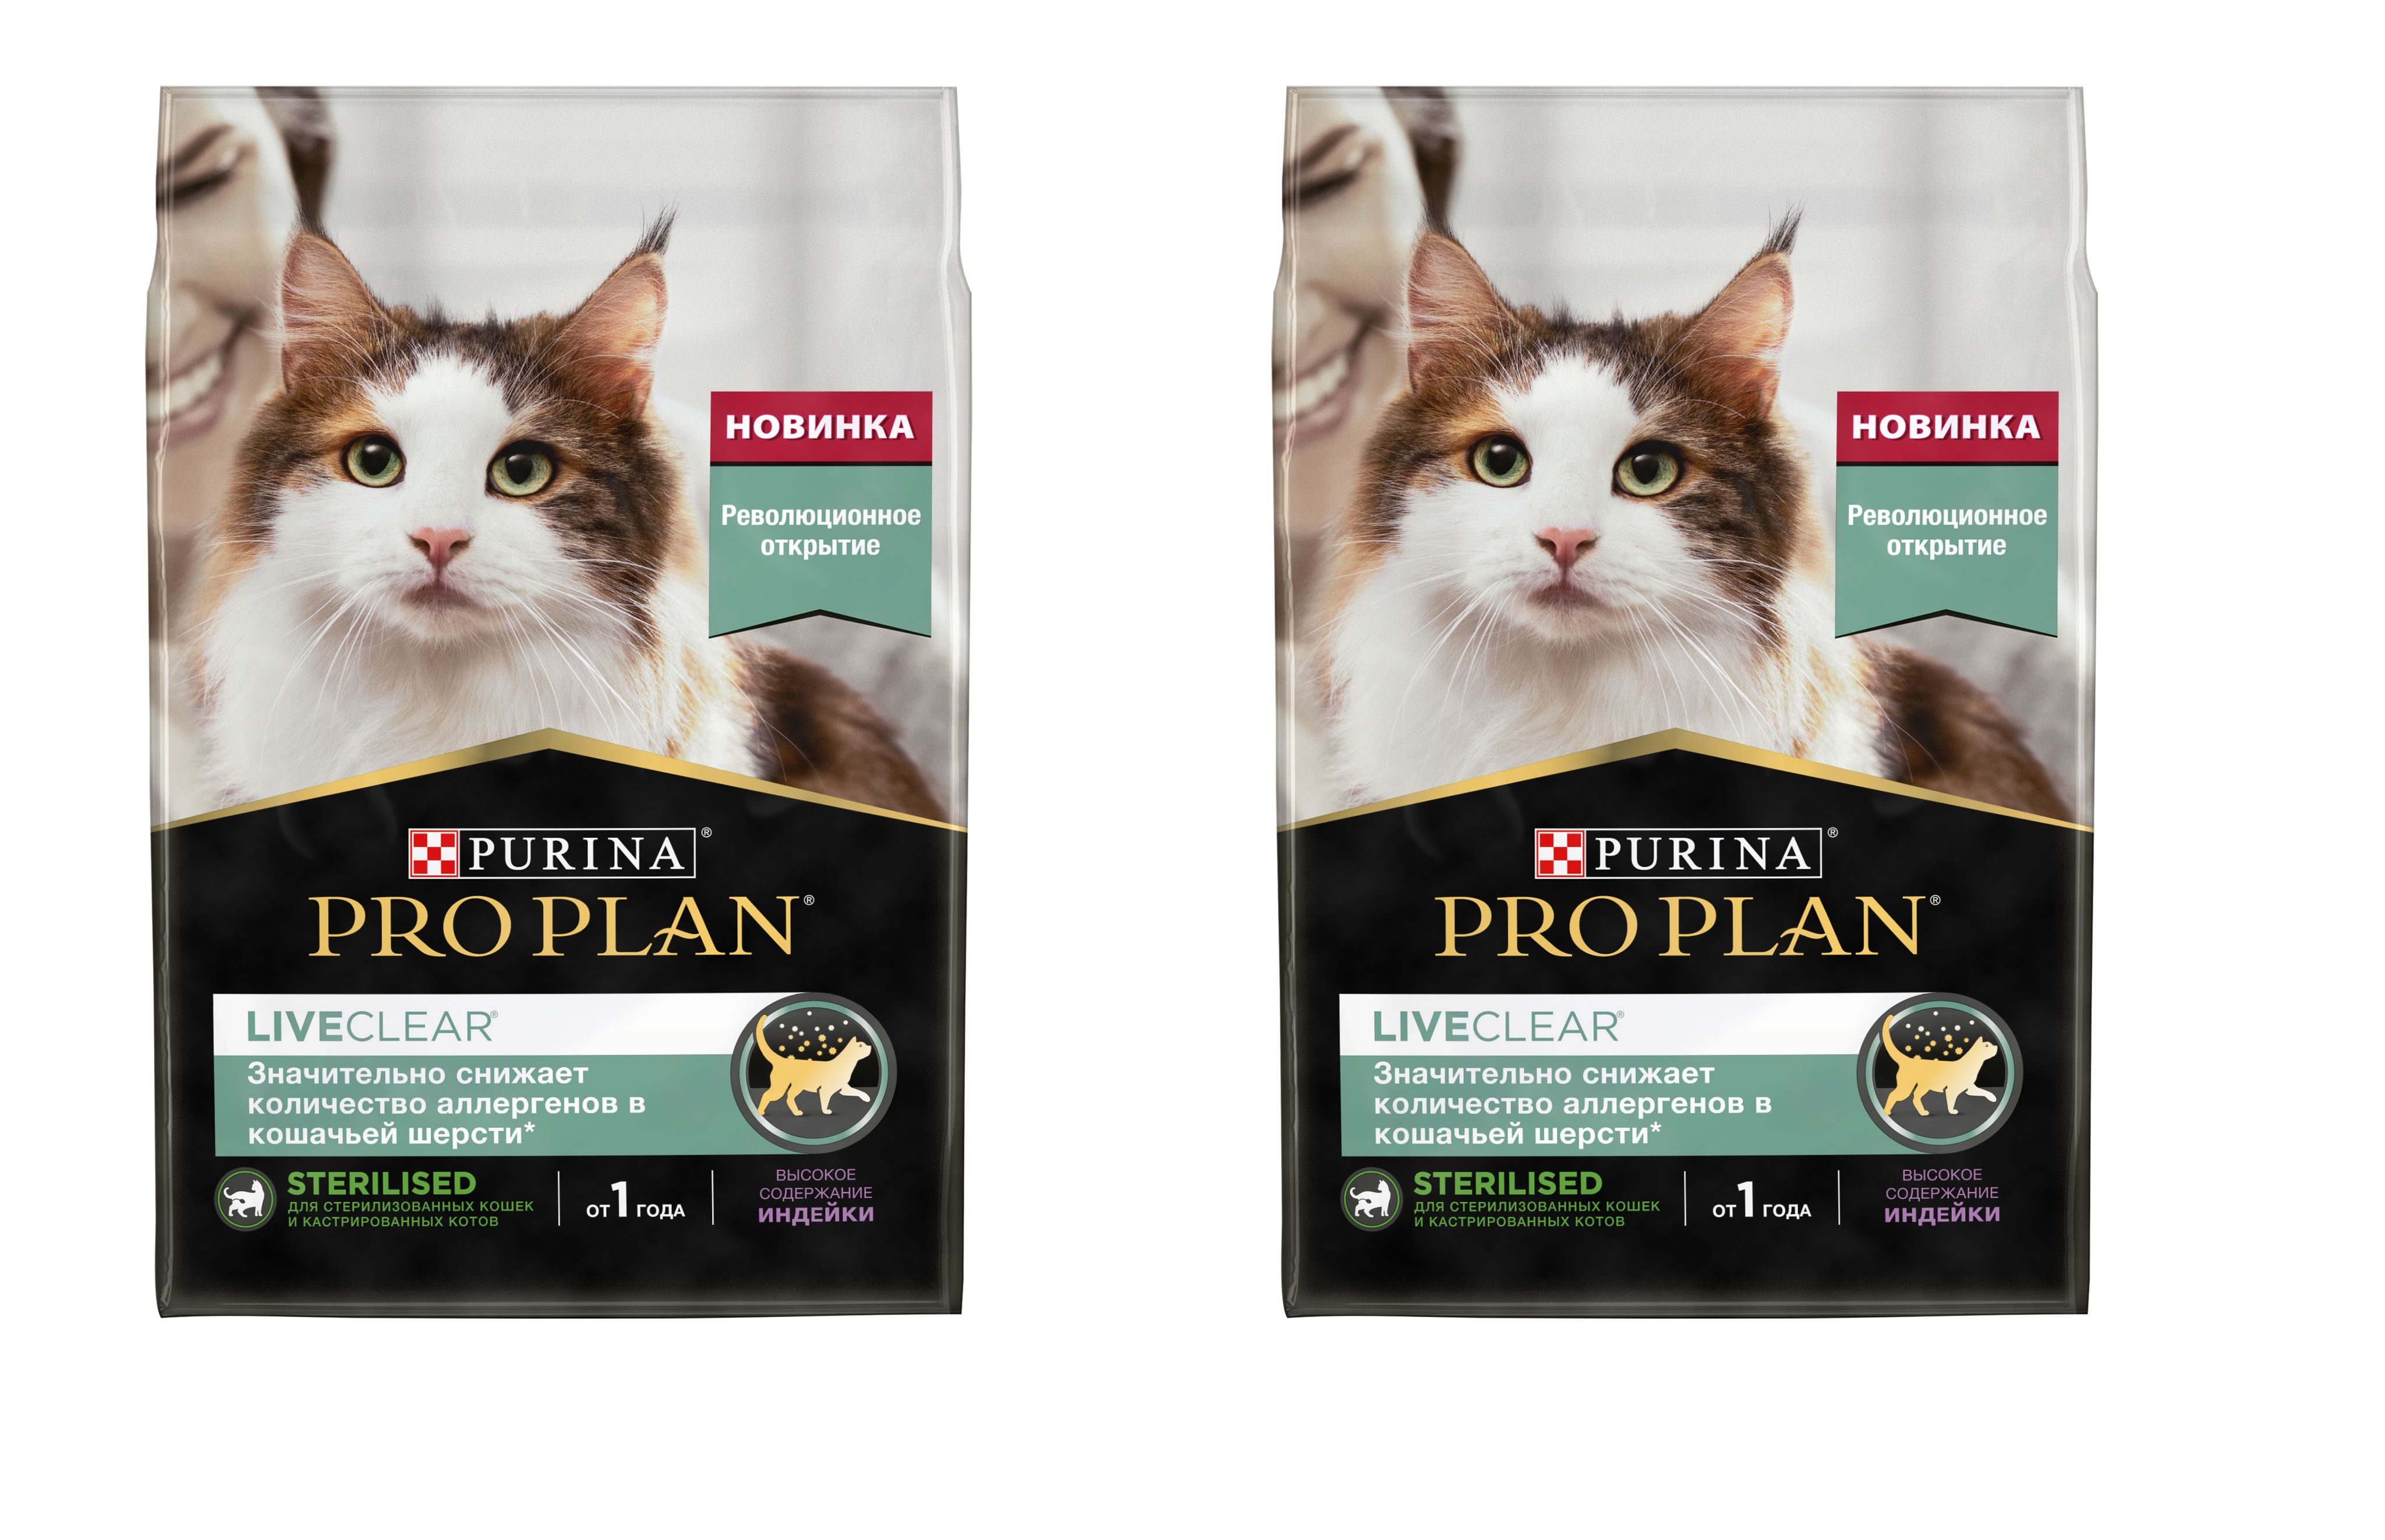 Pro plan liveclear снижает количество аллергенов. Проплан логотип. Корм для кошек для снижения аллергии в шерсти. Проплан Пурина с лососем с рыжим котом. Purina PROPLAN Baner.